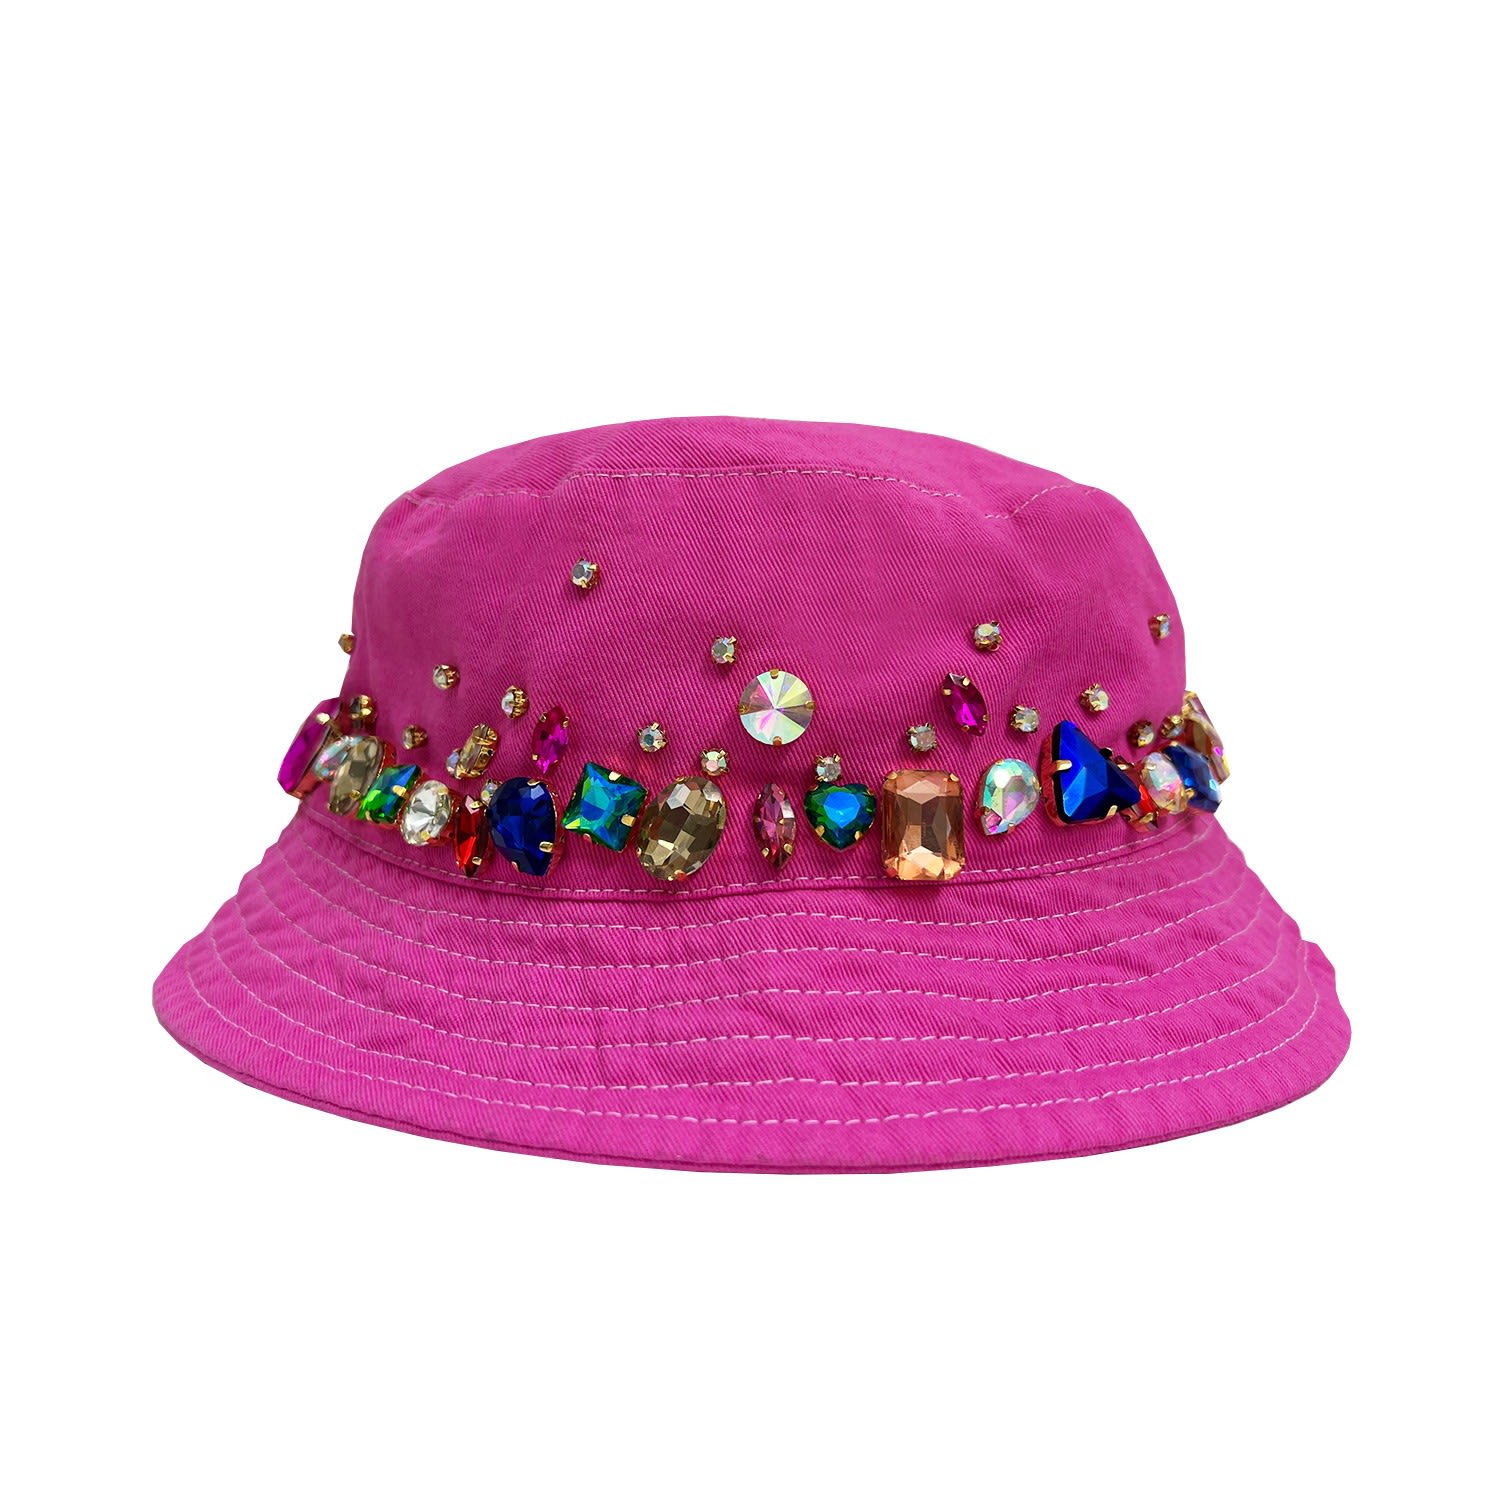 Quillattire Women's Pink / Purple Pink Embellished Bucket Hat